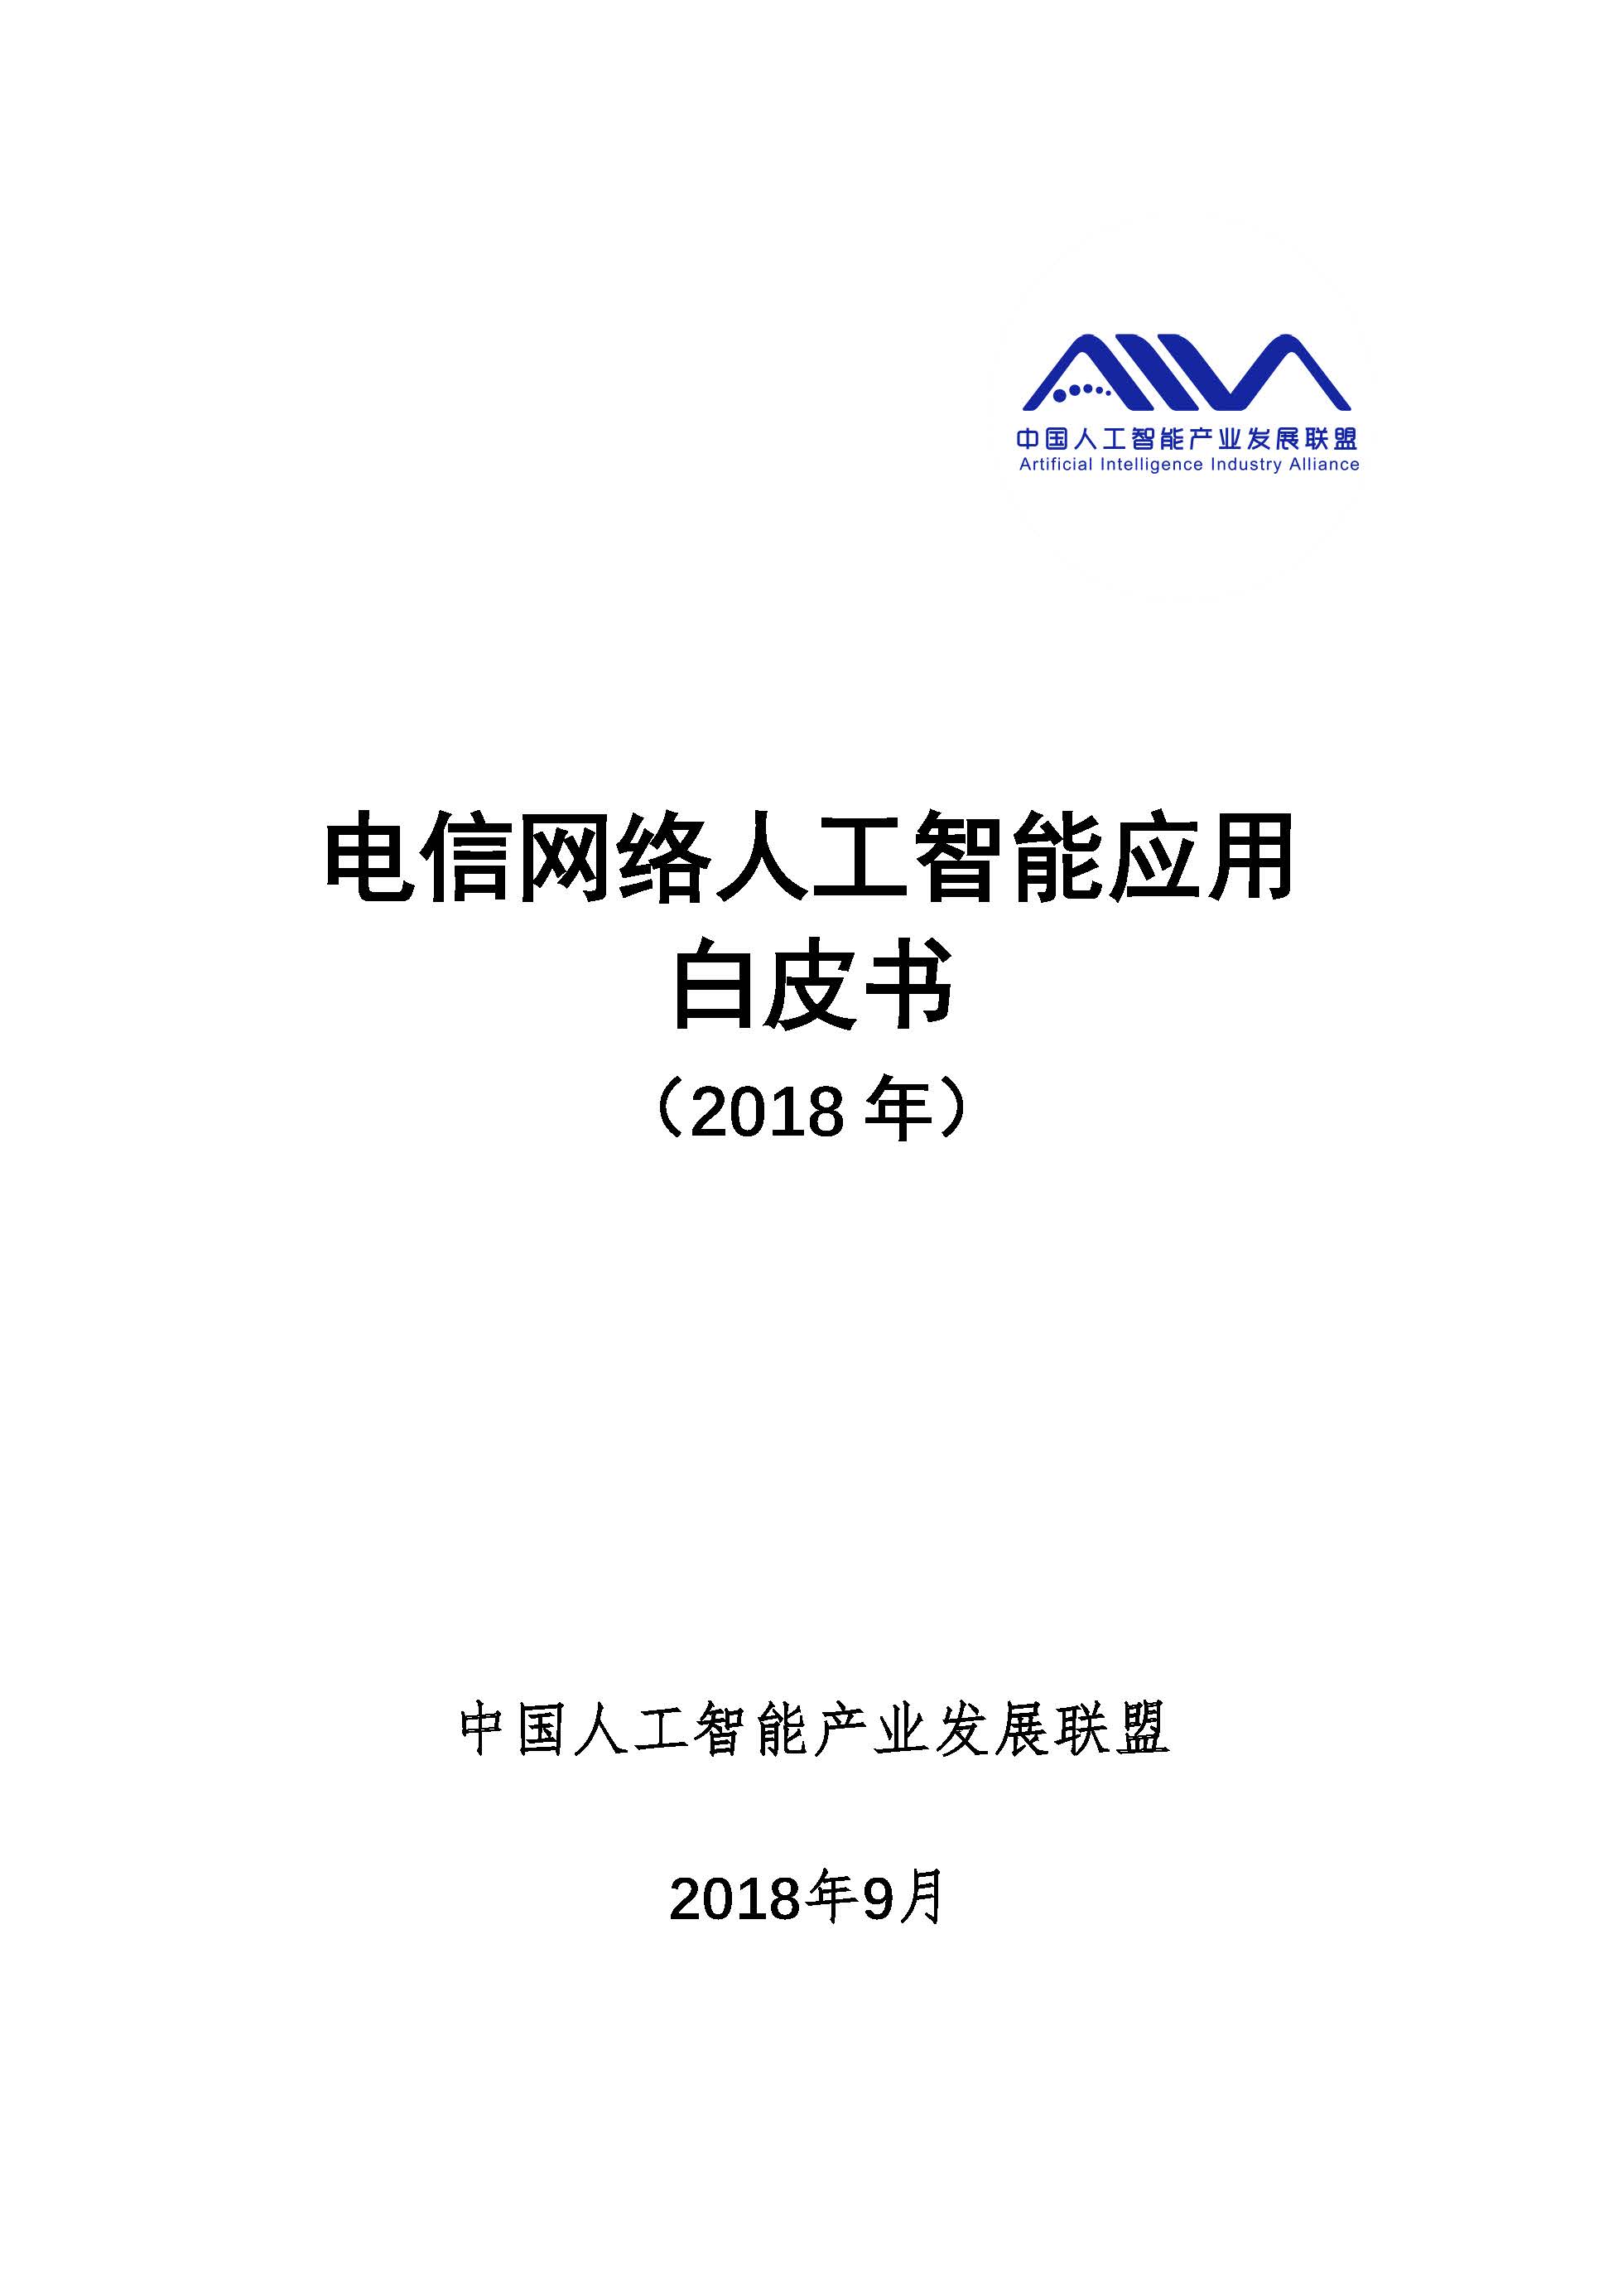 中国人工智能产业发展联盟发布《电信网络人工智能应用白皮书》(后附白皮书全文)